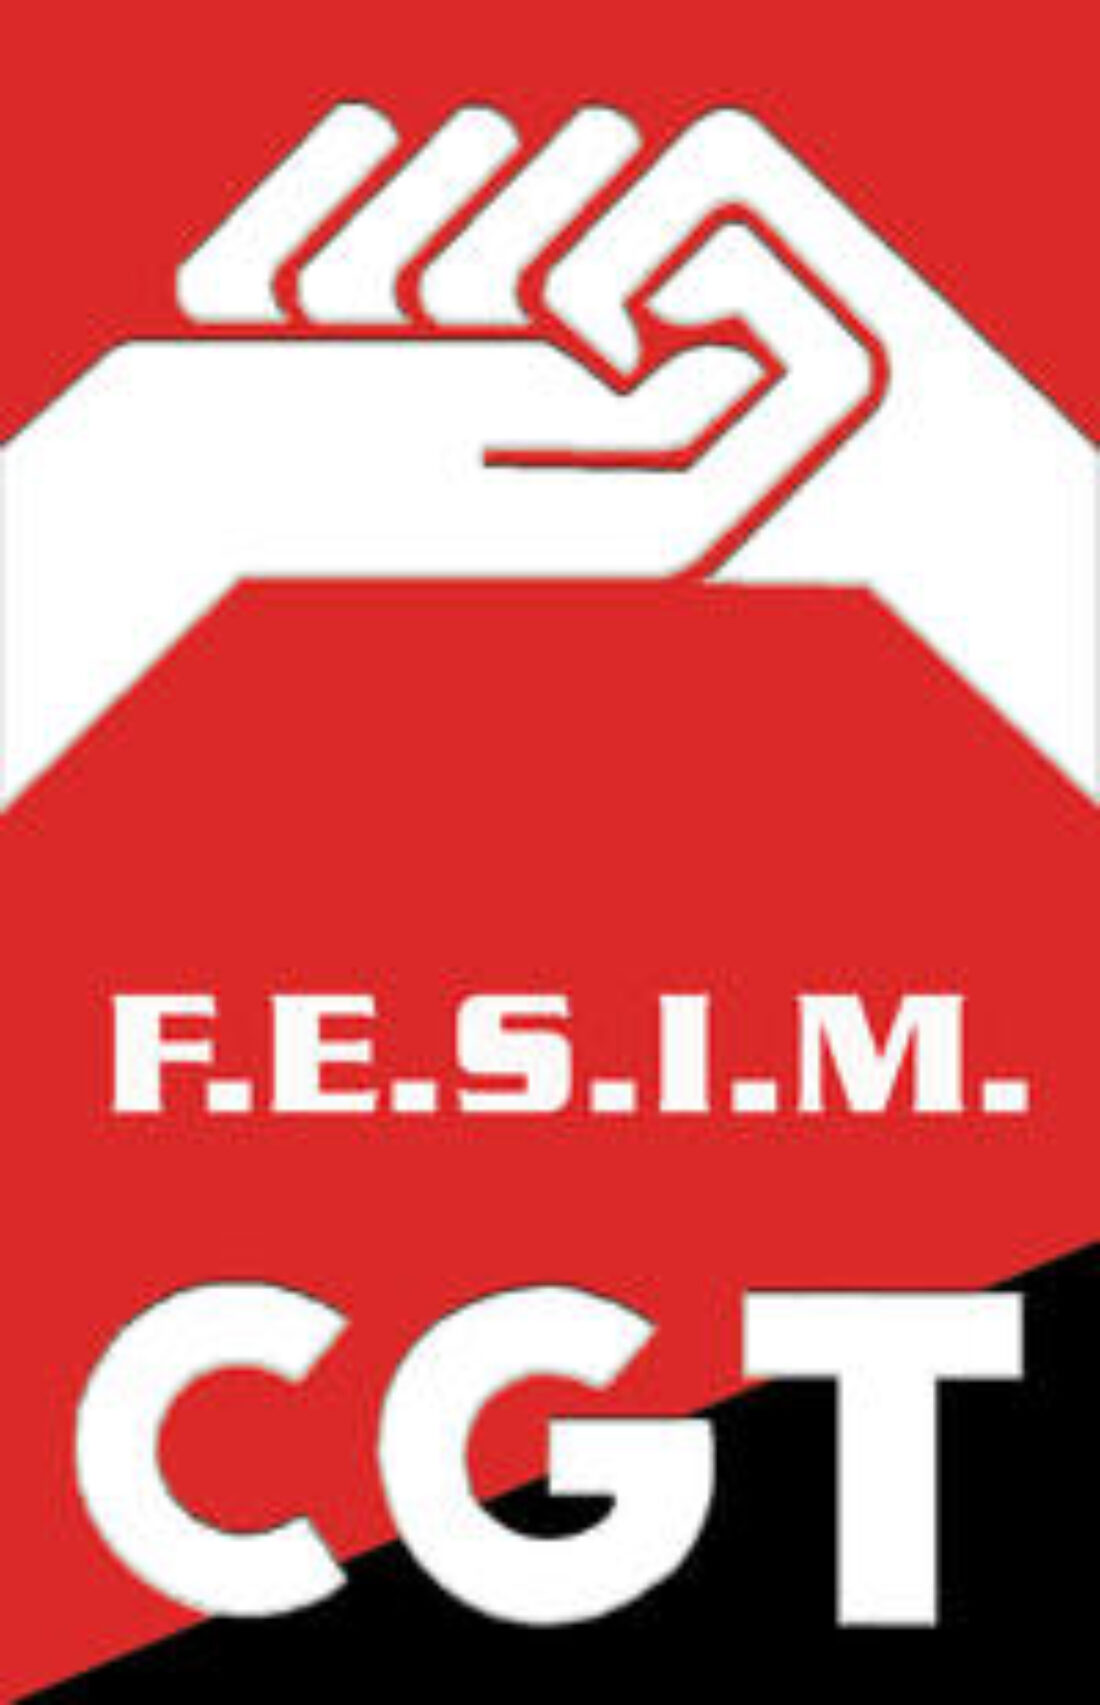 Petición de solidaridad desde la FESIM-CGT con los trabajadores de SEAT, IMESAPI y FICOSA